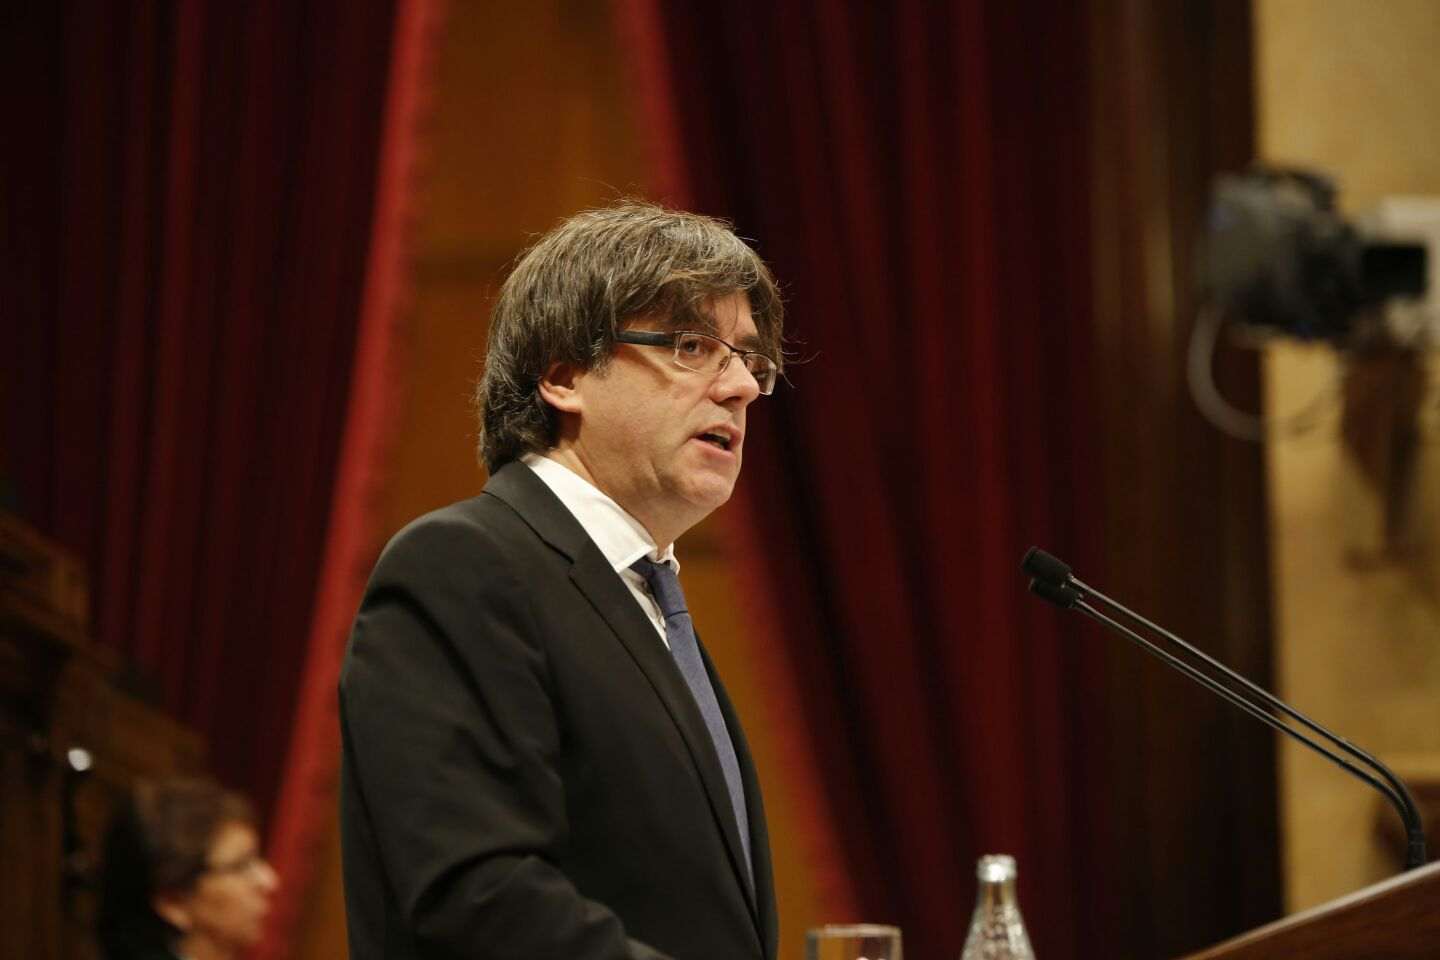 Recullen signatures perquè Puigdemont es presenti a les eleccions catalanes